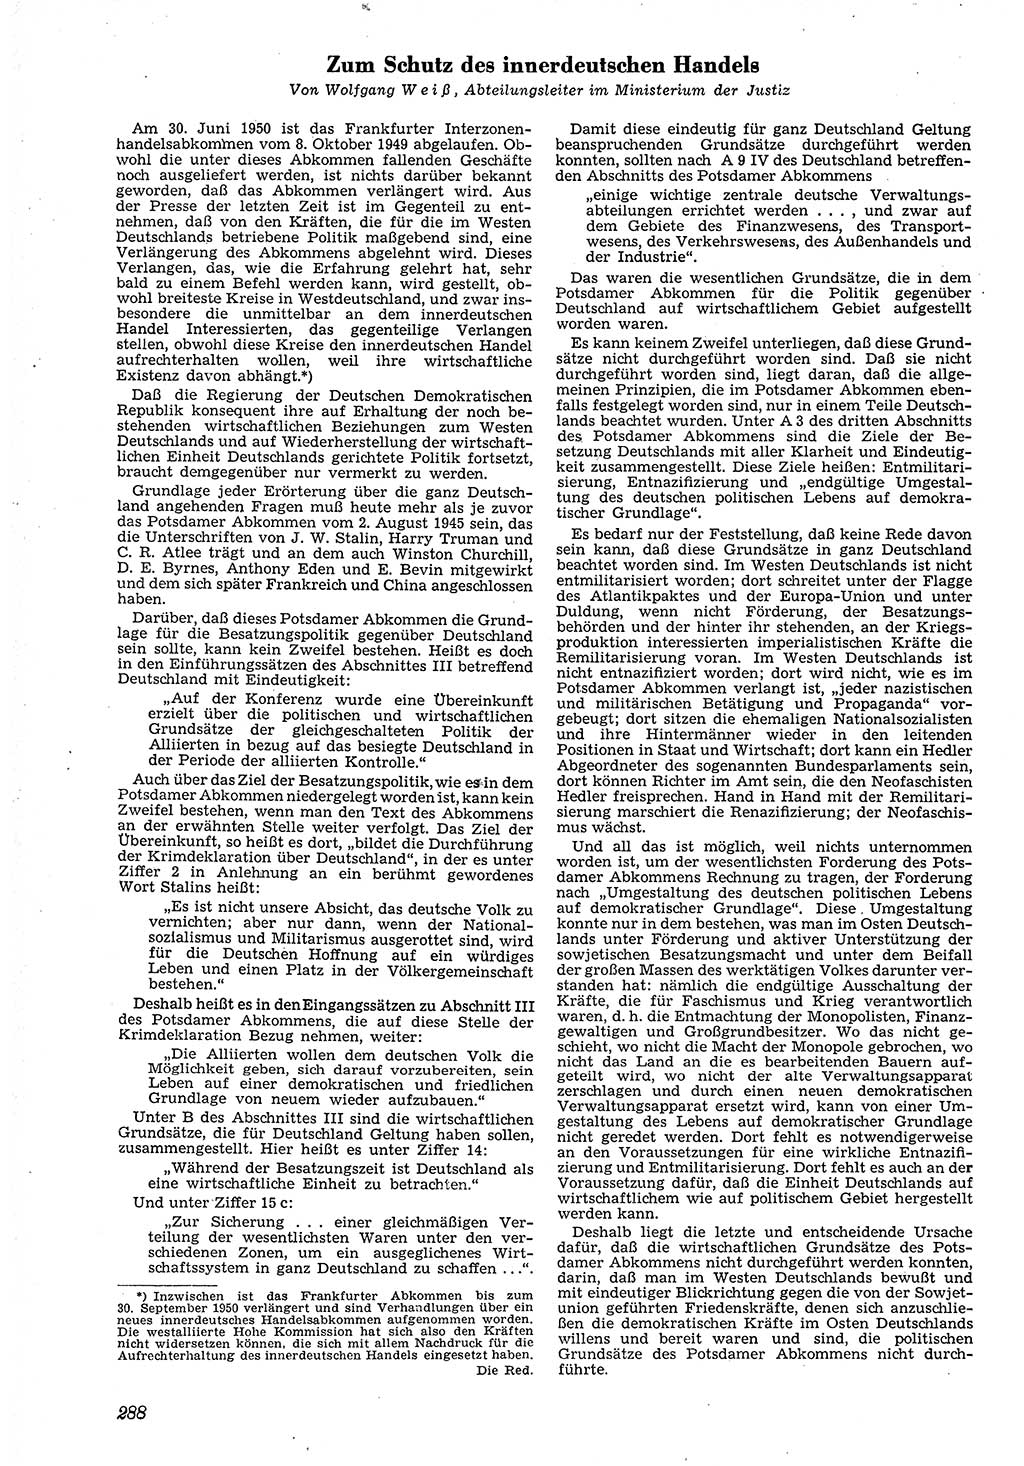 Neue Justiz (NJ), Zeitschrift für Recht und Rechtswissenschaft [Deutsche Demokratische Republik (DDR)], 4. Jahrgang 1950, Seite 288 (NJ DDR 1950, S. 288)